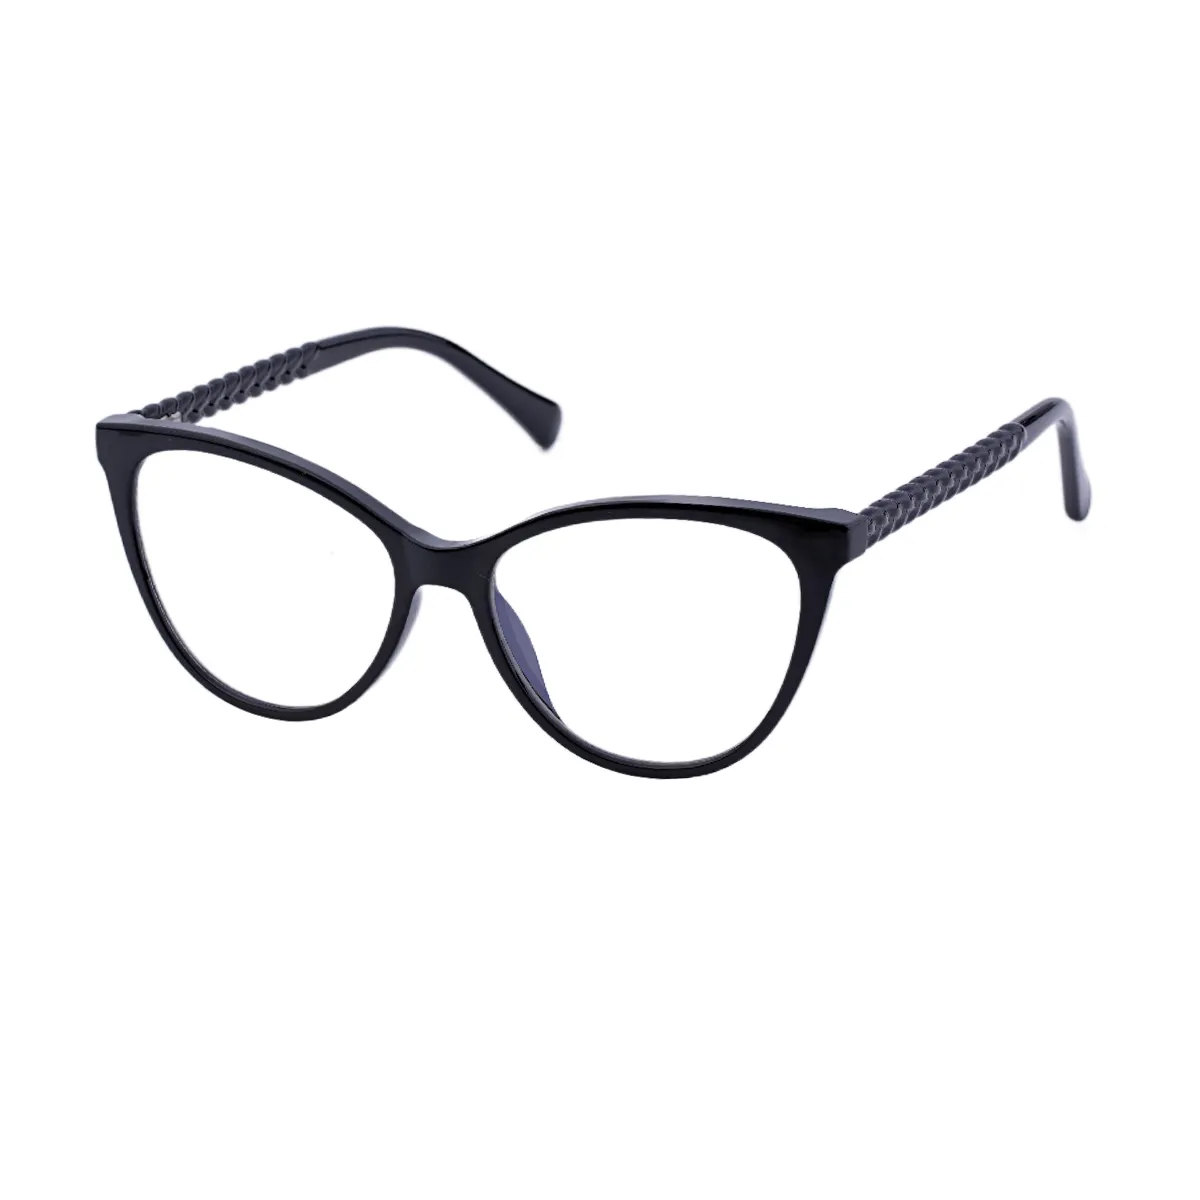 Betsy - Cat-eye Black Glasses for Women